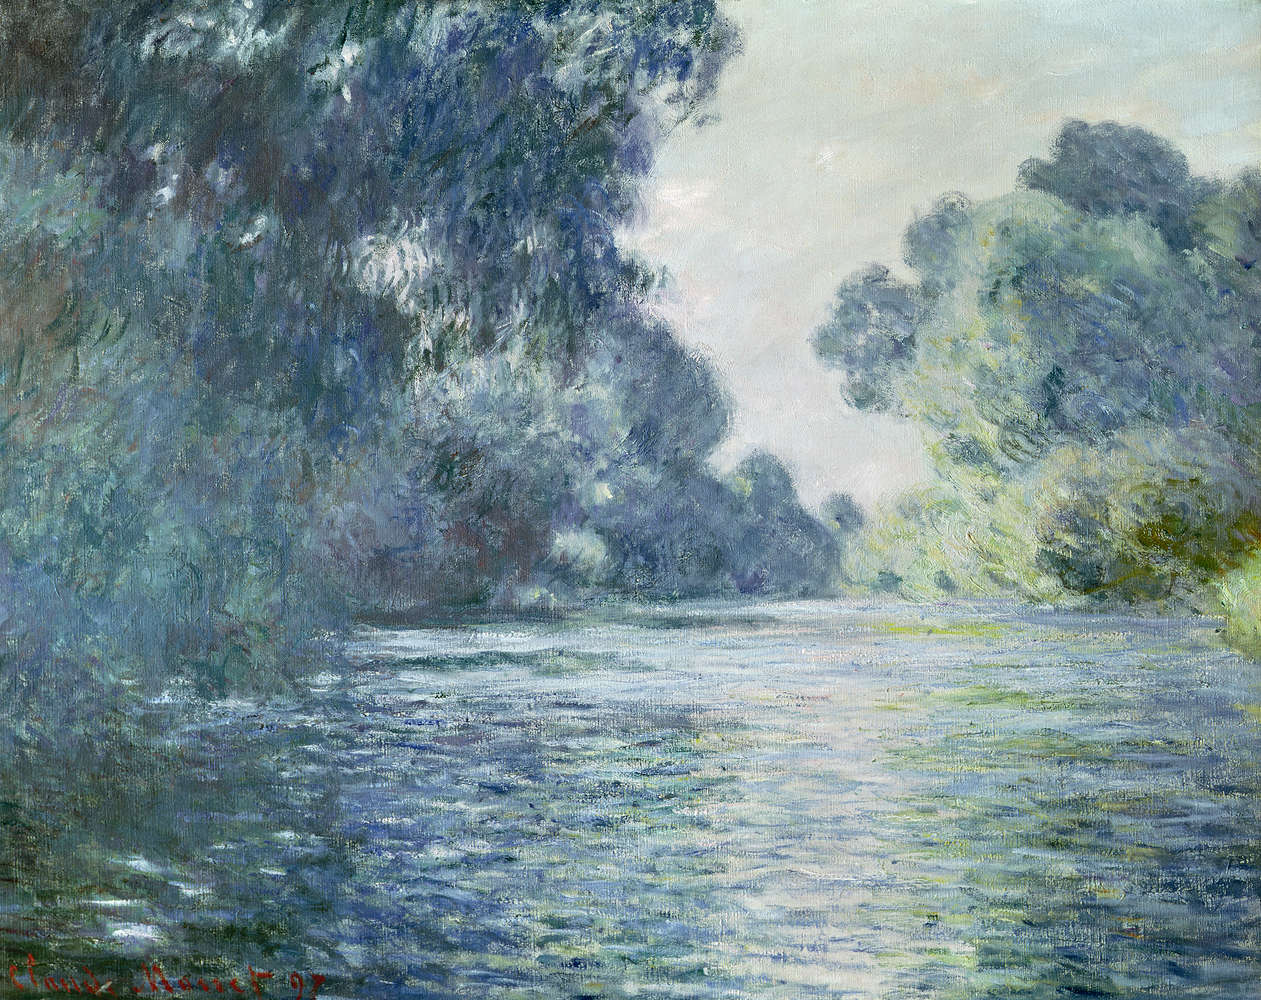             Fototapete "Auf einem Seitenarm der Seine bei Giverny" von Claude Monet
        